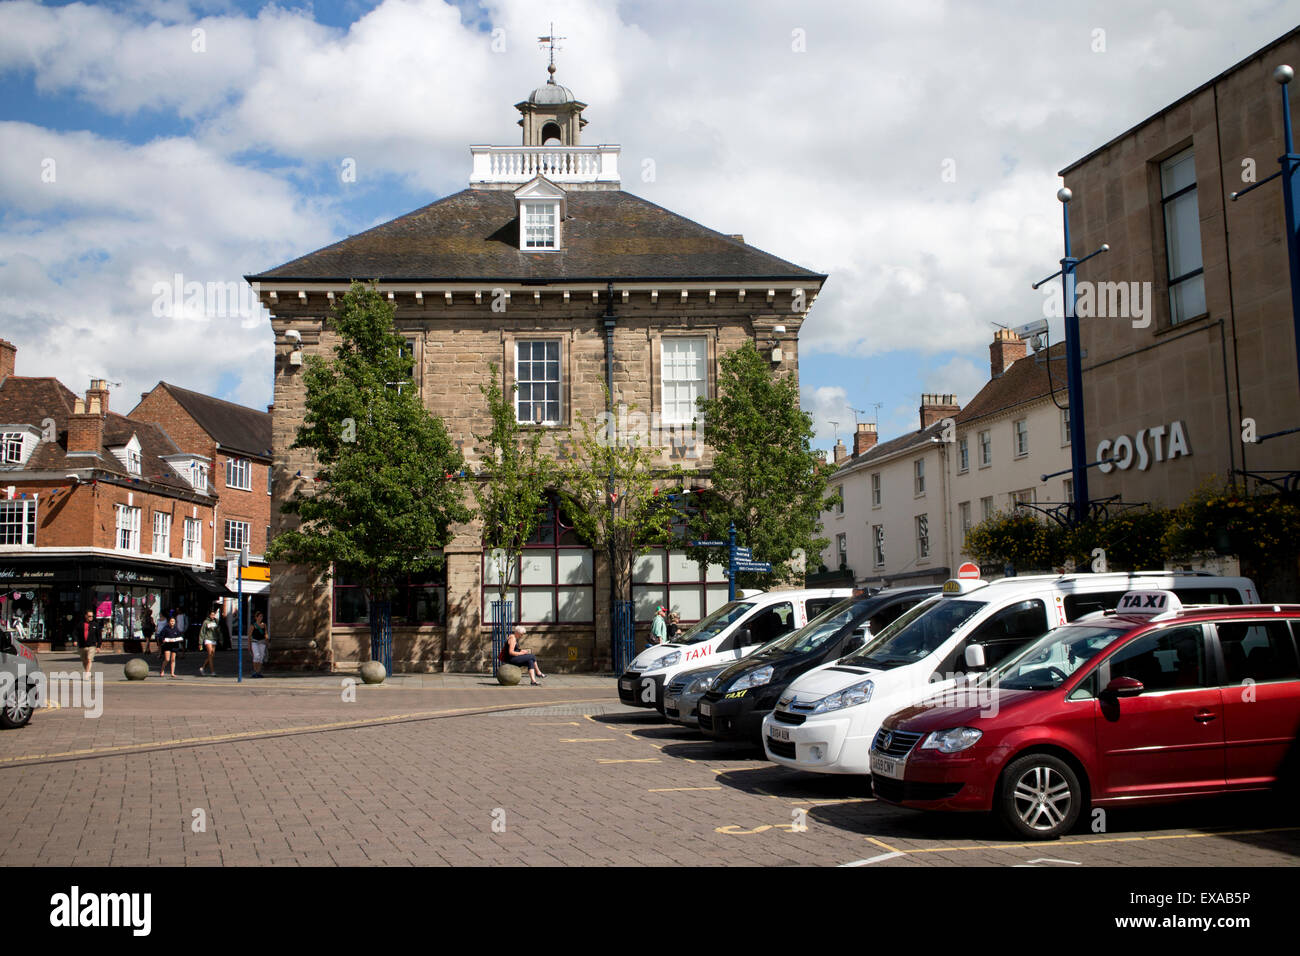 Taxistand und Markthalle in Warwick Stadtzentrum, Warwickshire, England, UK Stockfoto